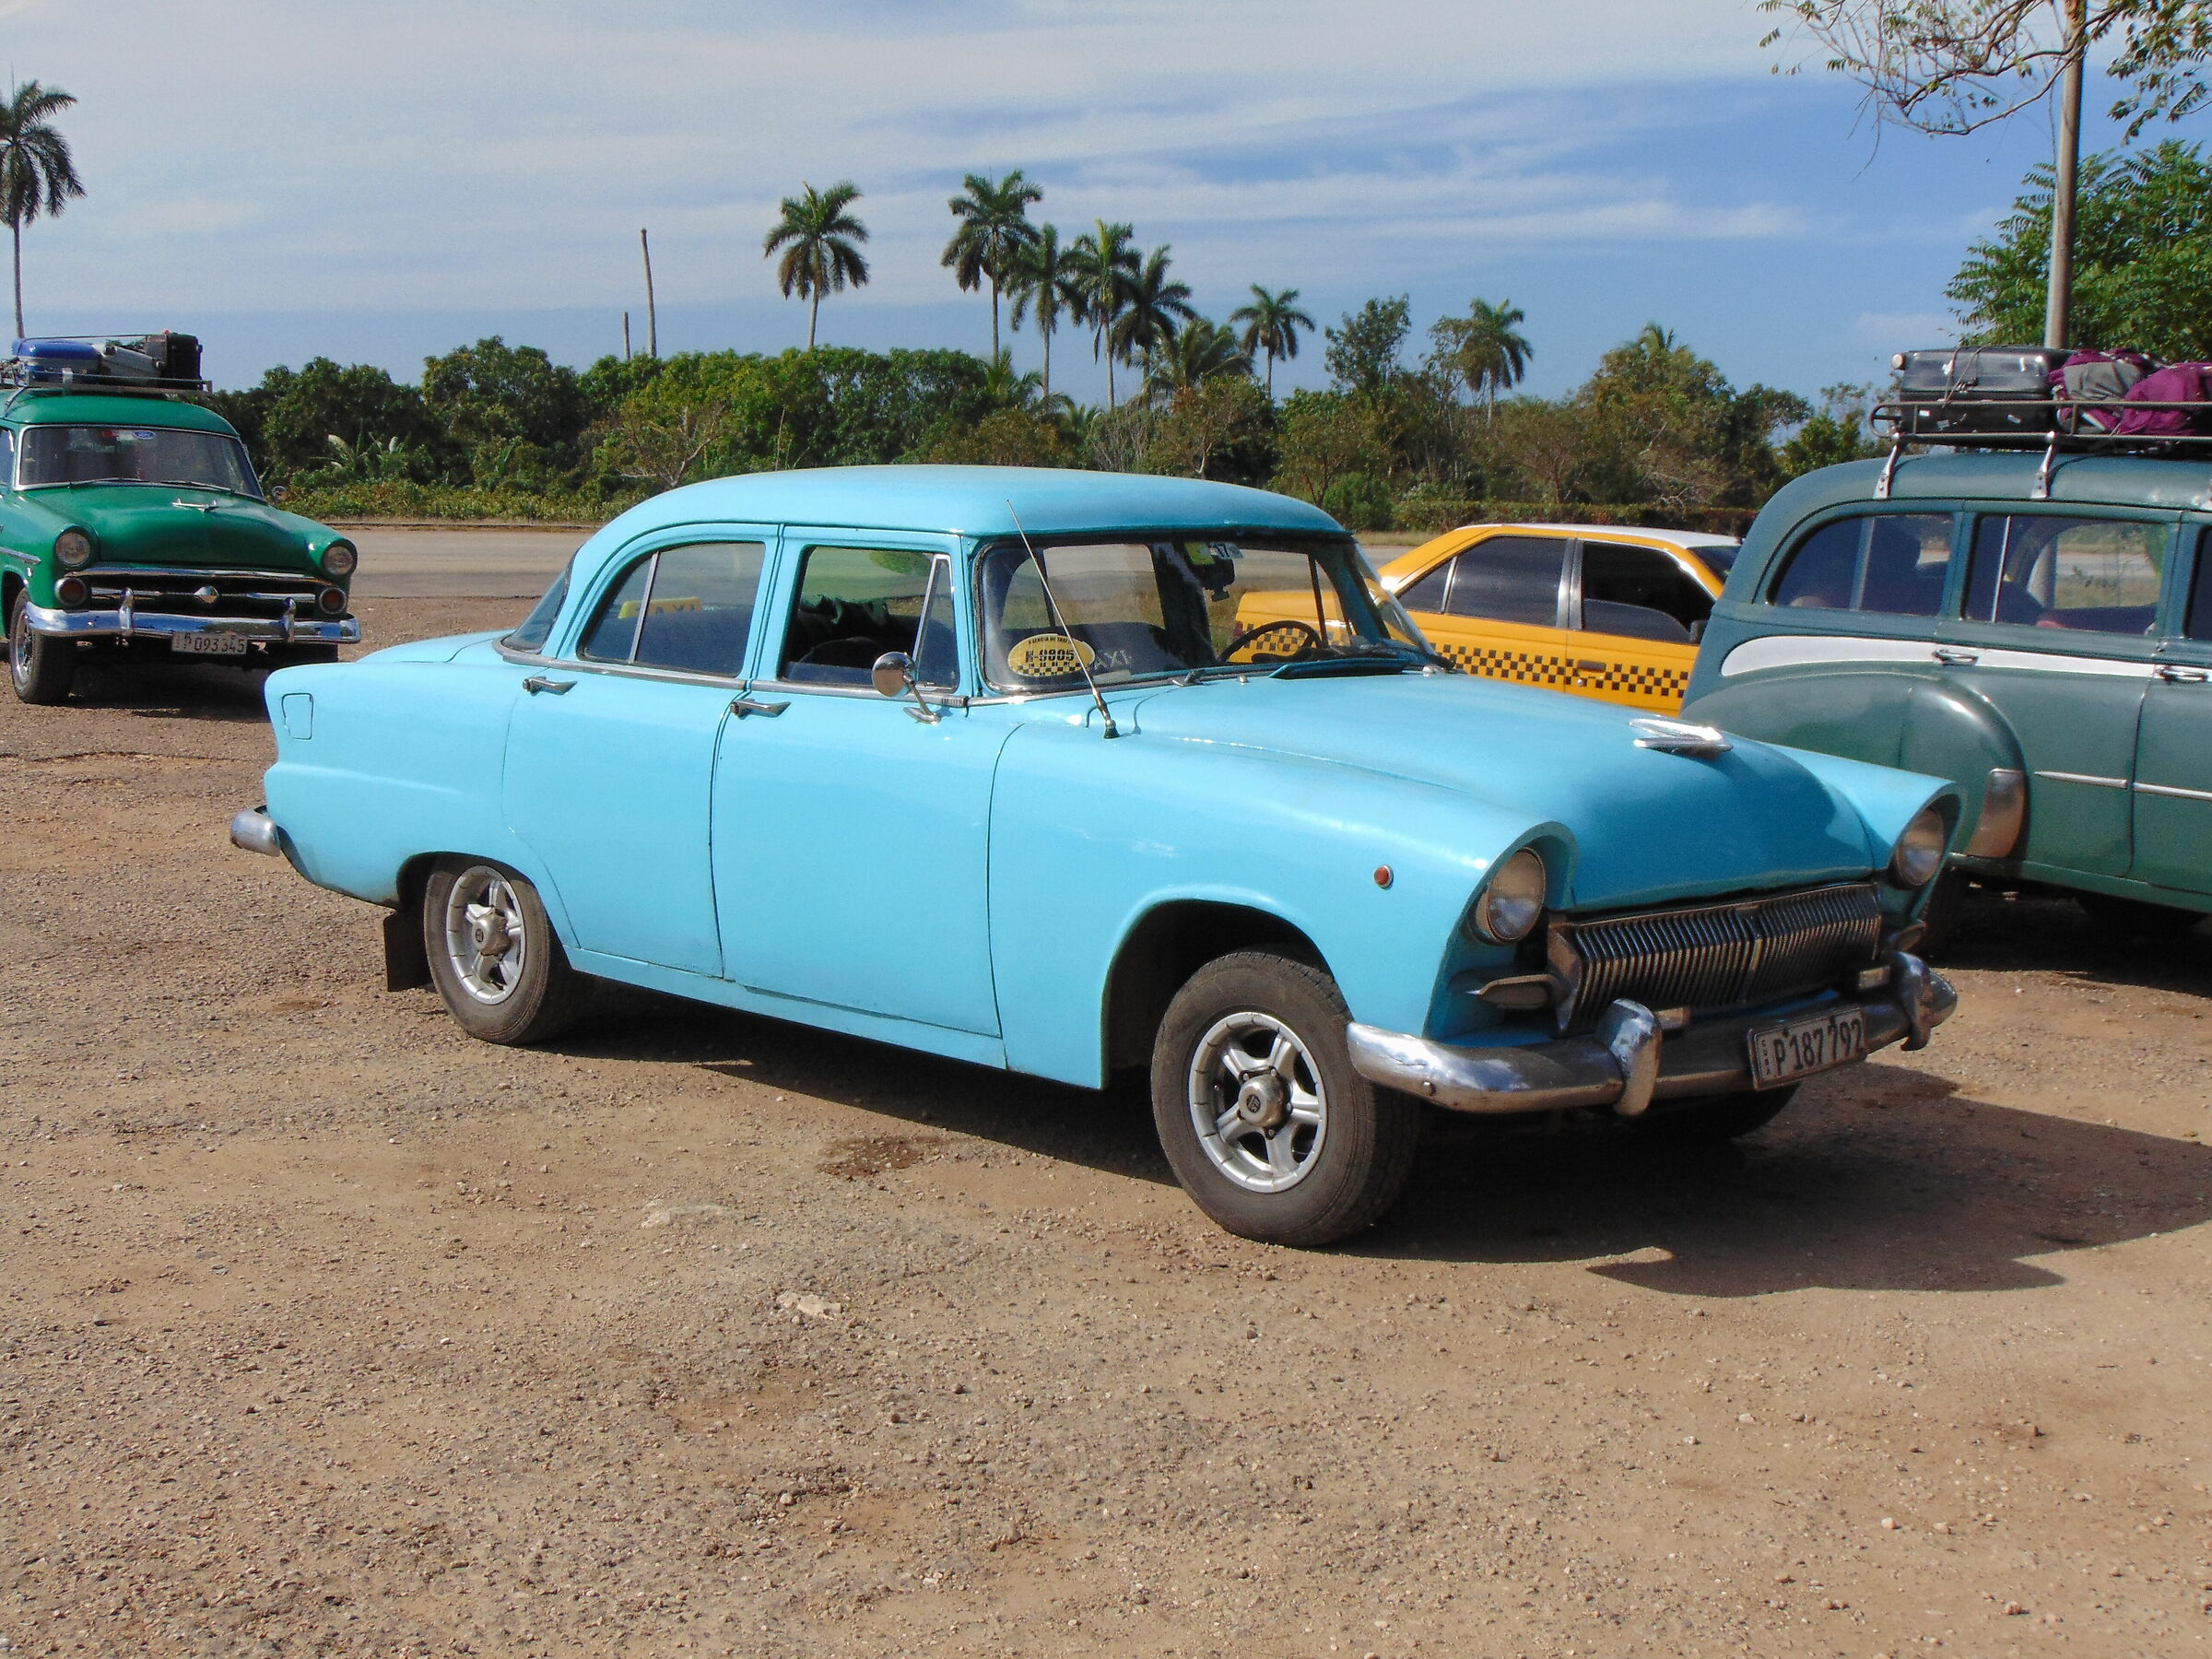 Old Car in Havana...